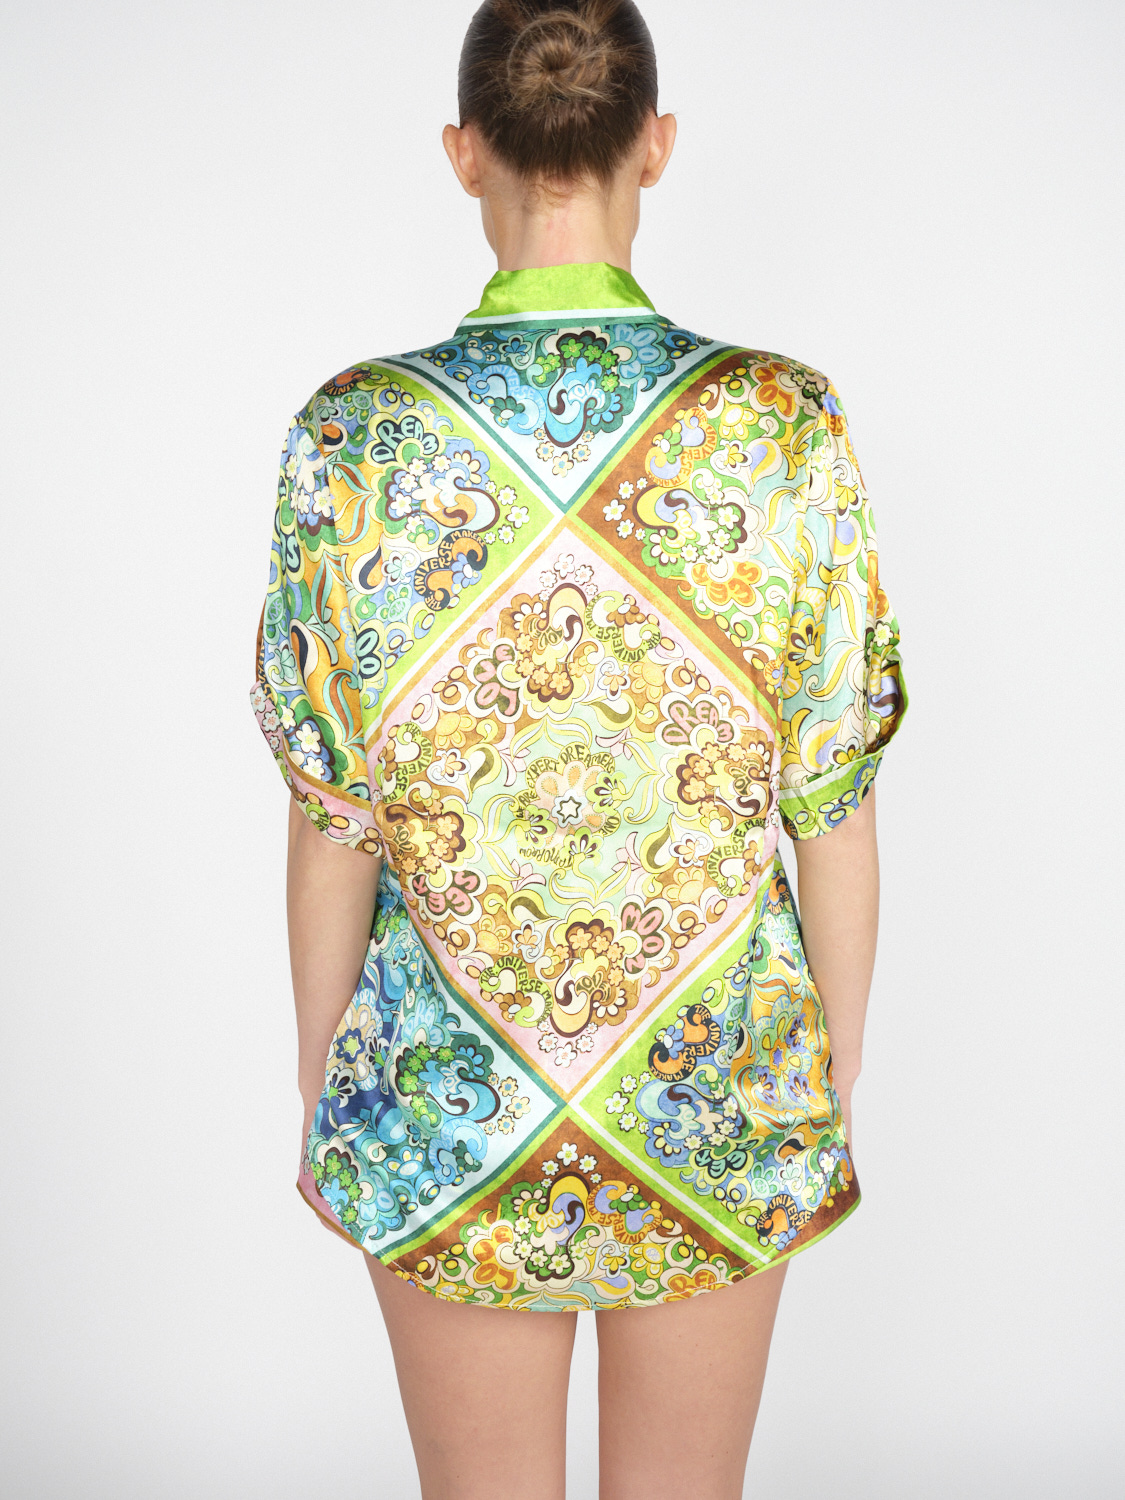 Alemais Dreamer Shirt - Chemisier à manches courtes avec imprimé floral mehrfarbig 36